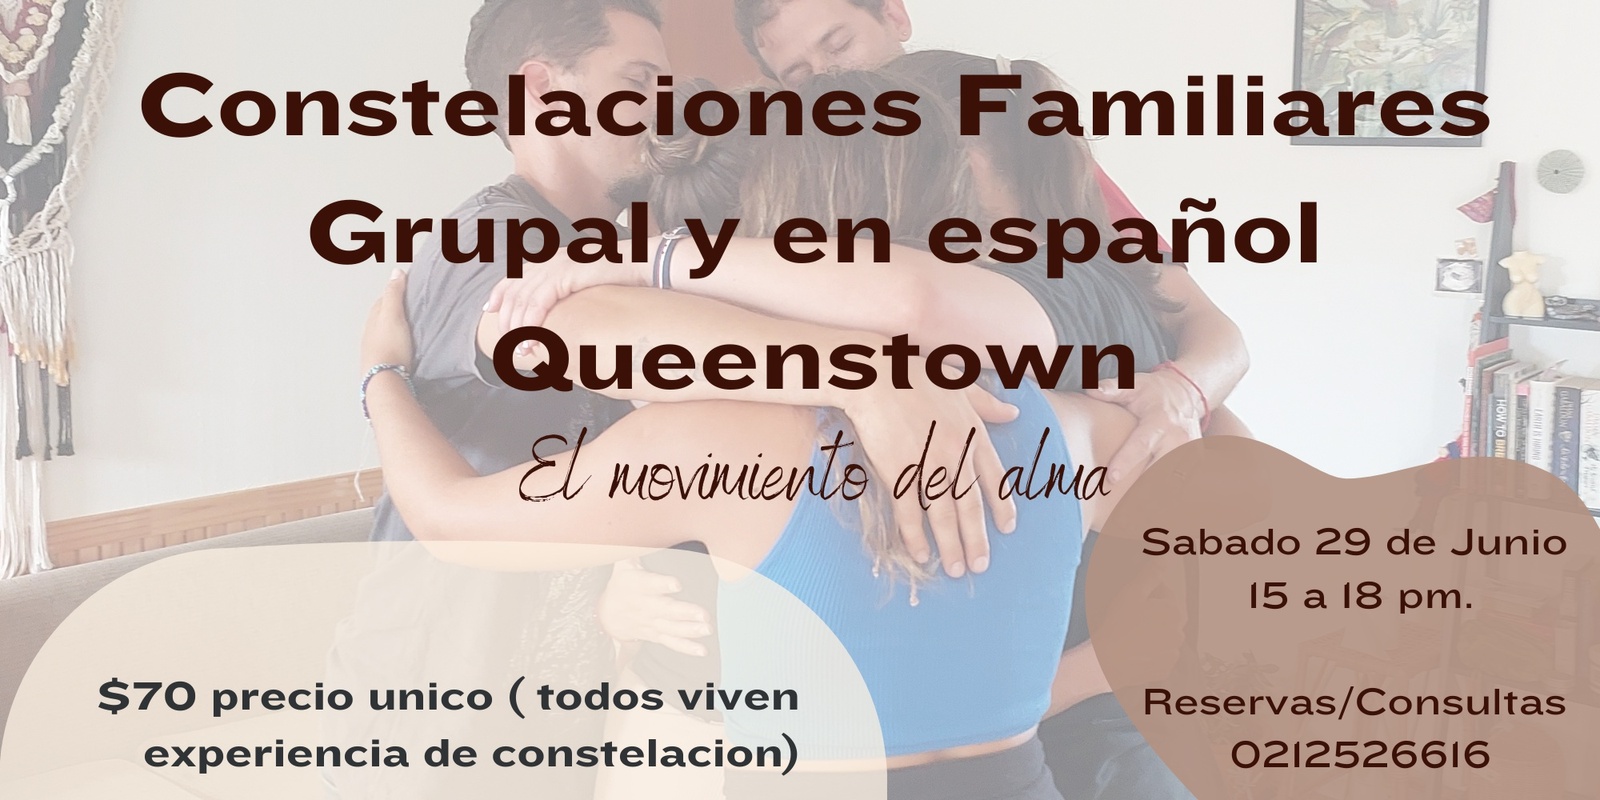 Banner image for Constelaciones Familiares Grupal y en español, Queenstown. 